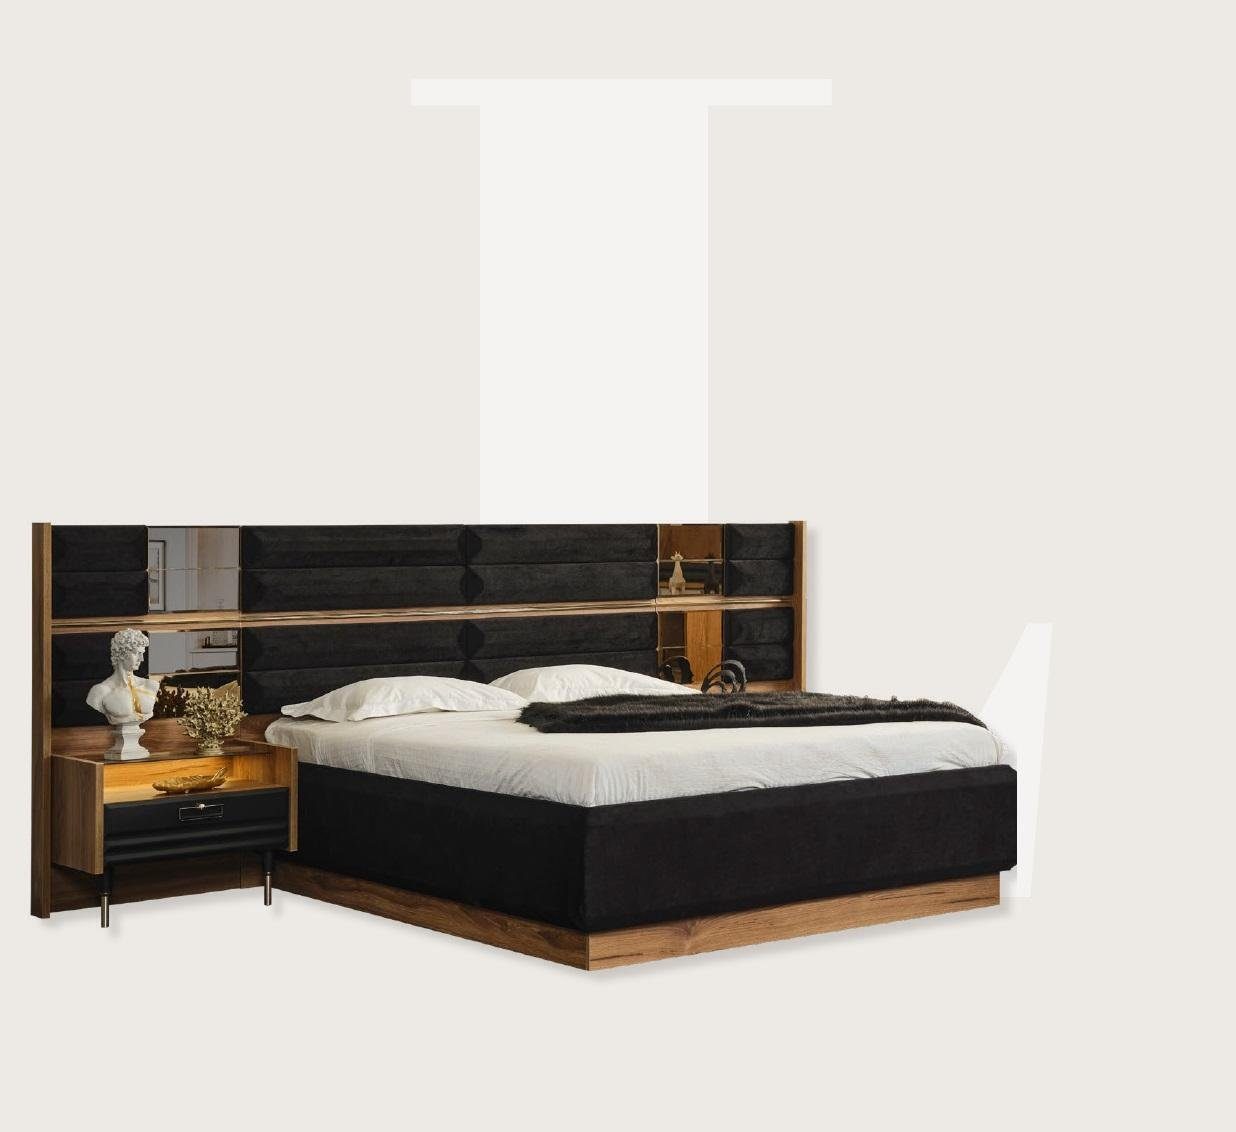 JVmoebel Bett Doppelbett Schwarz Design Design Modernes Luxus Betten Bett Möbel